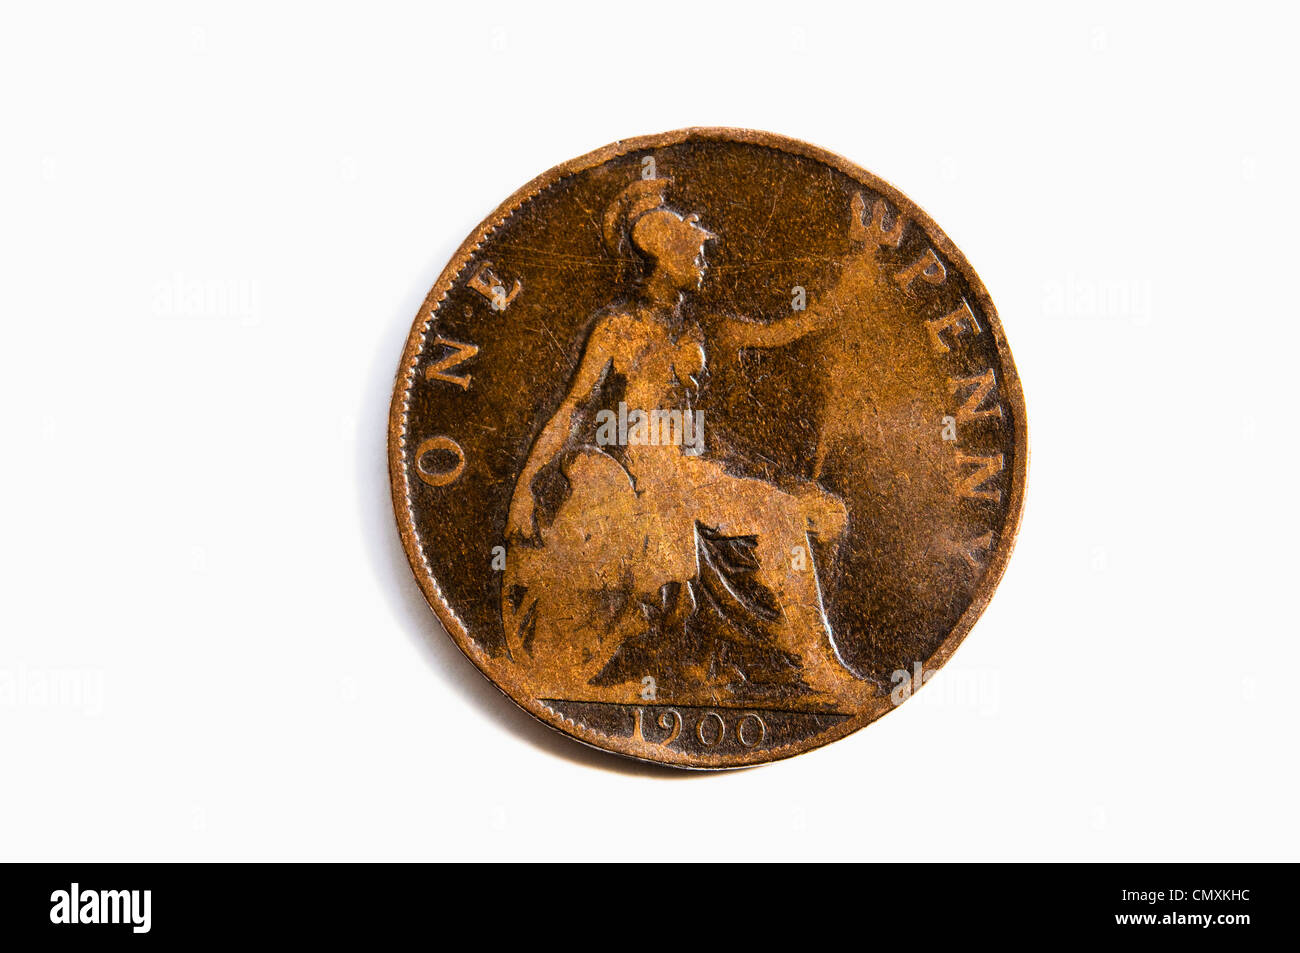 Un vieux et usé un cent coin de 1900 - qui marque le début du 20e siècle. Tails side up, avec Britannia / date. UK. Banque D'Images